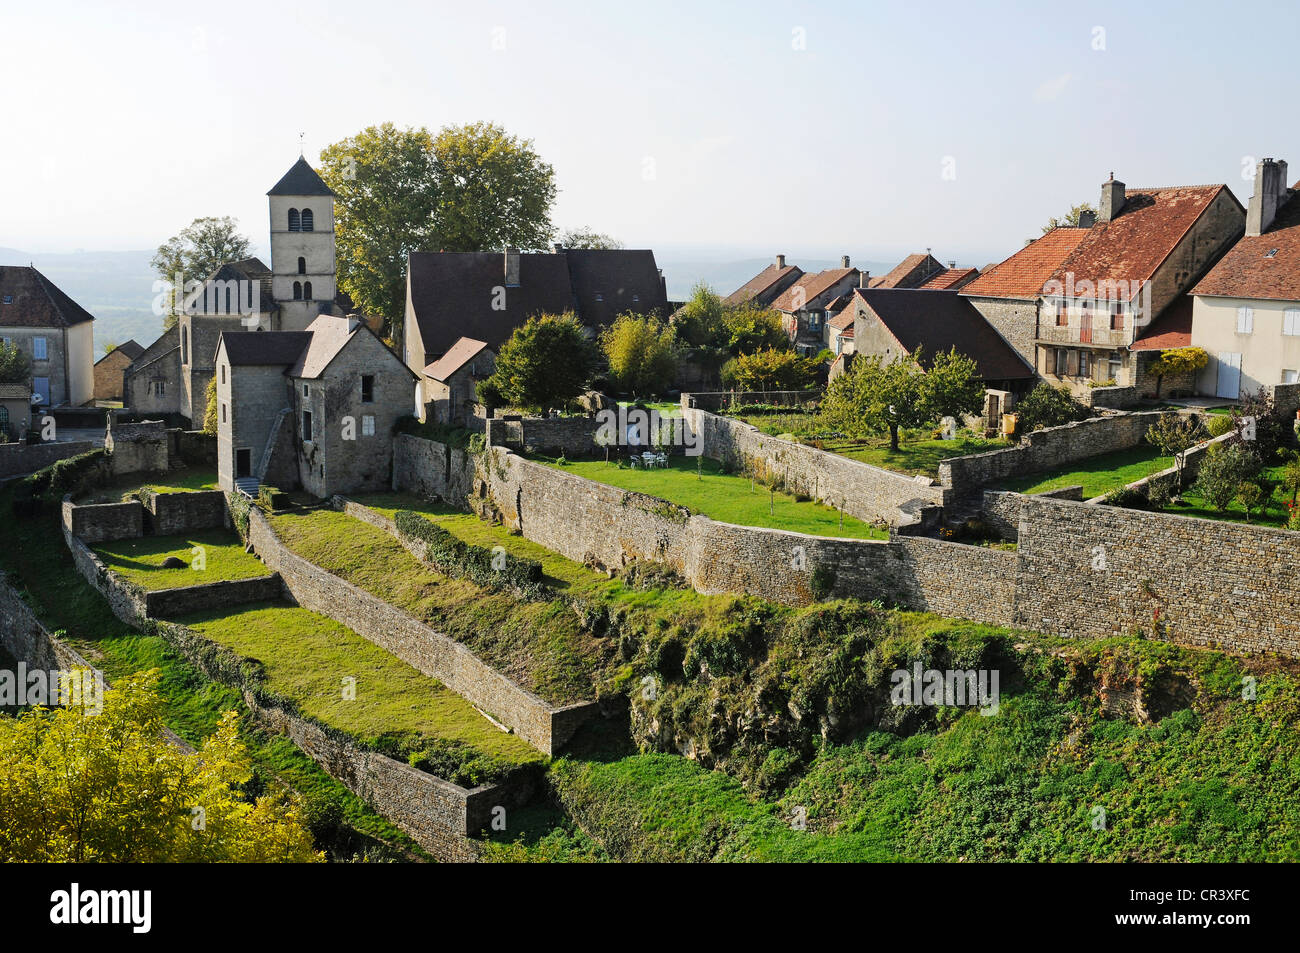 Village, community, Chateau-Chalon, Department of Jura, Franche-Comté, France, Europe, PublicGround Stock Photo